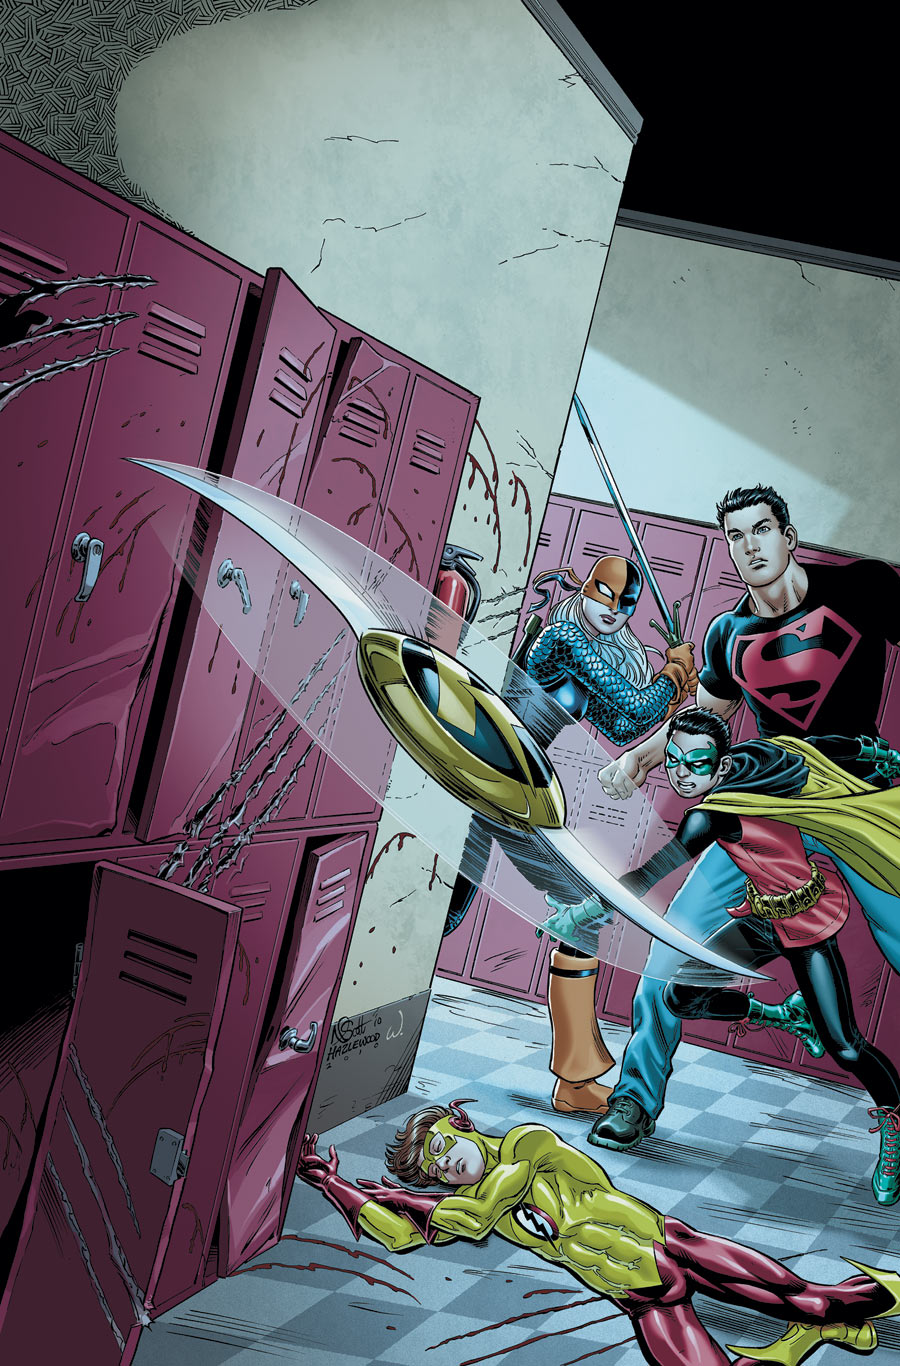 Teen Titans #90